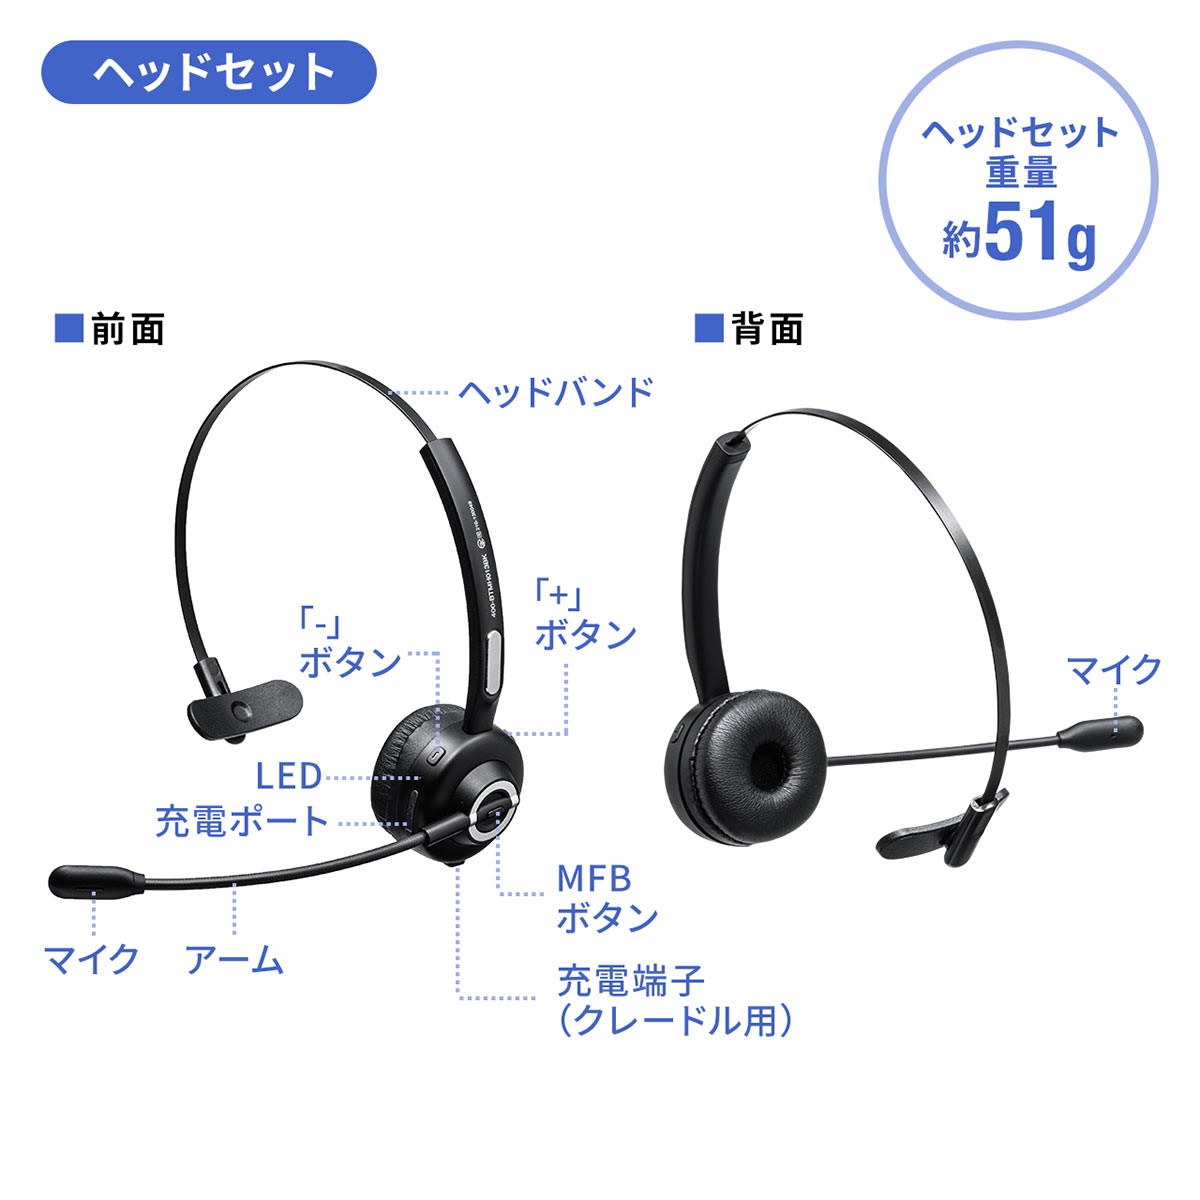 ヘッドセット Bluetooth ワイヤレス ヘッドホン マイク付き 電話対応 業務用 コールセンター用 インカム スマホ 片耳 ヘッドセット  :400-BTMH013BK:サンワダイレクト - 通販 - Yahoo!ショッピング